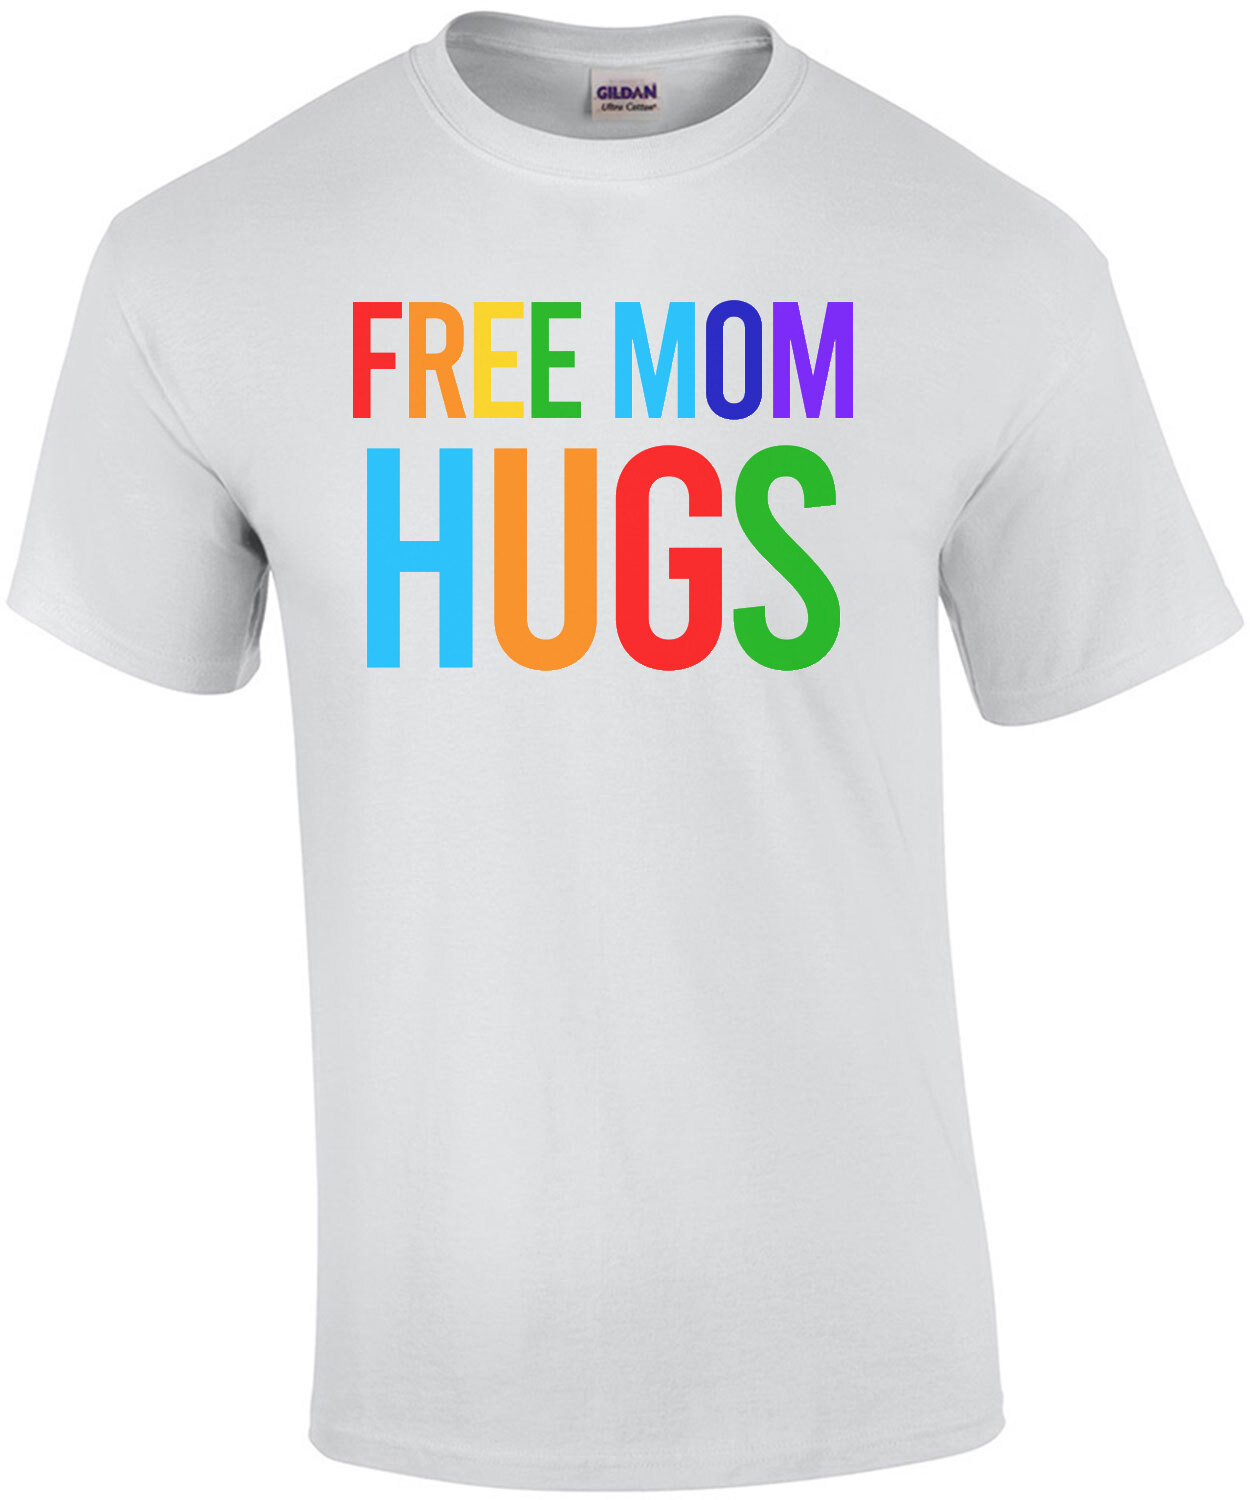 Free mom hugs - gay pride t-shirt